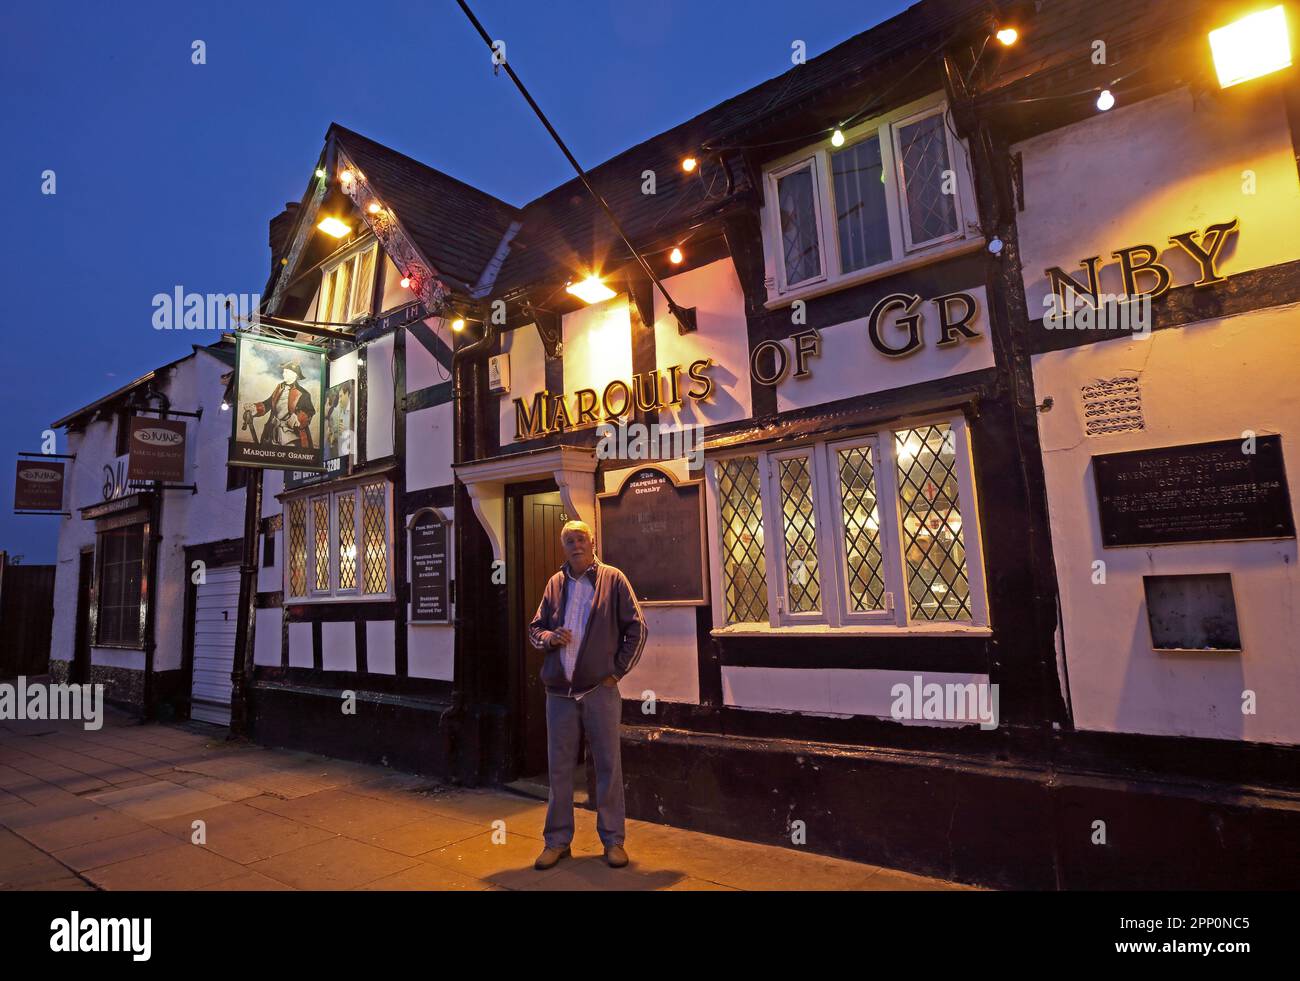 Crépuscule au Marquis de Granby pub, 53 Church Street, Warrington, Cheshire, Angleterre, ROYAUME-UNI, WA1 2SZ Banque D'Images